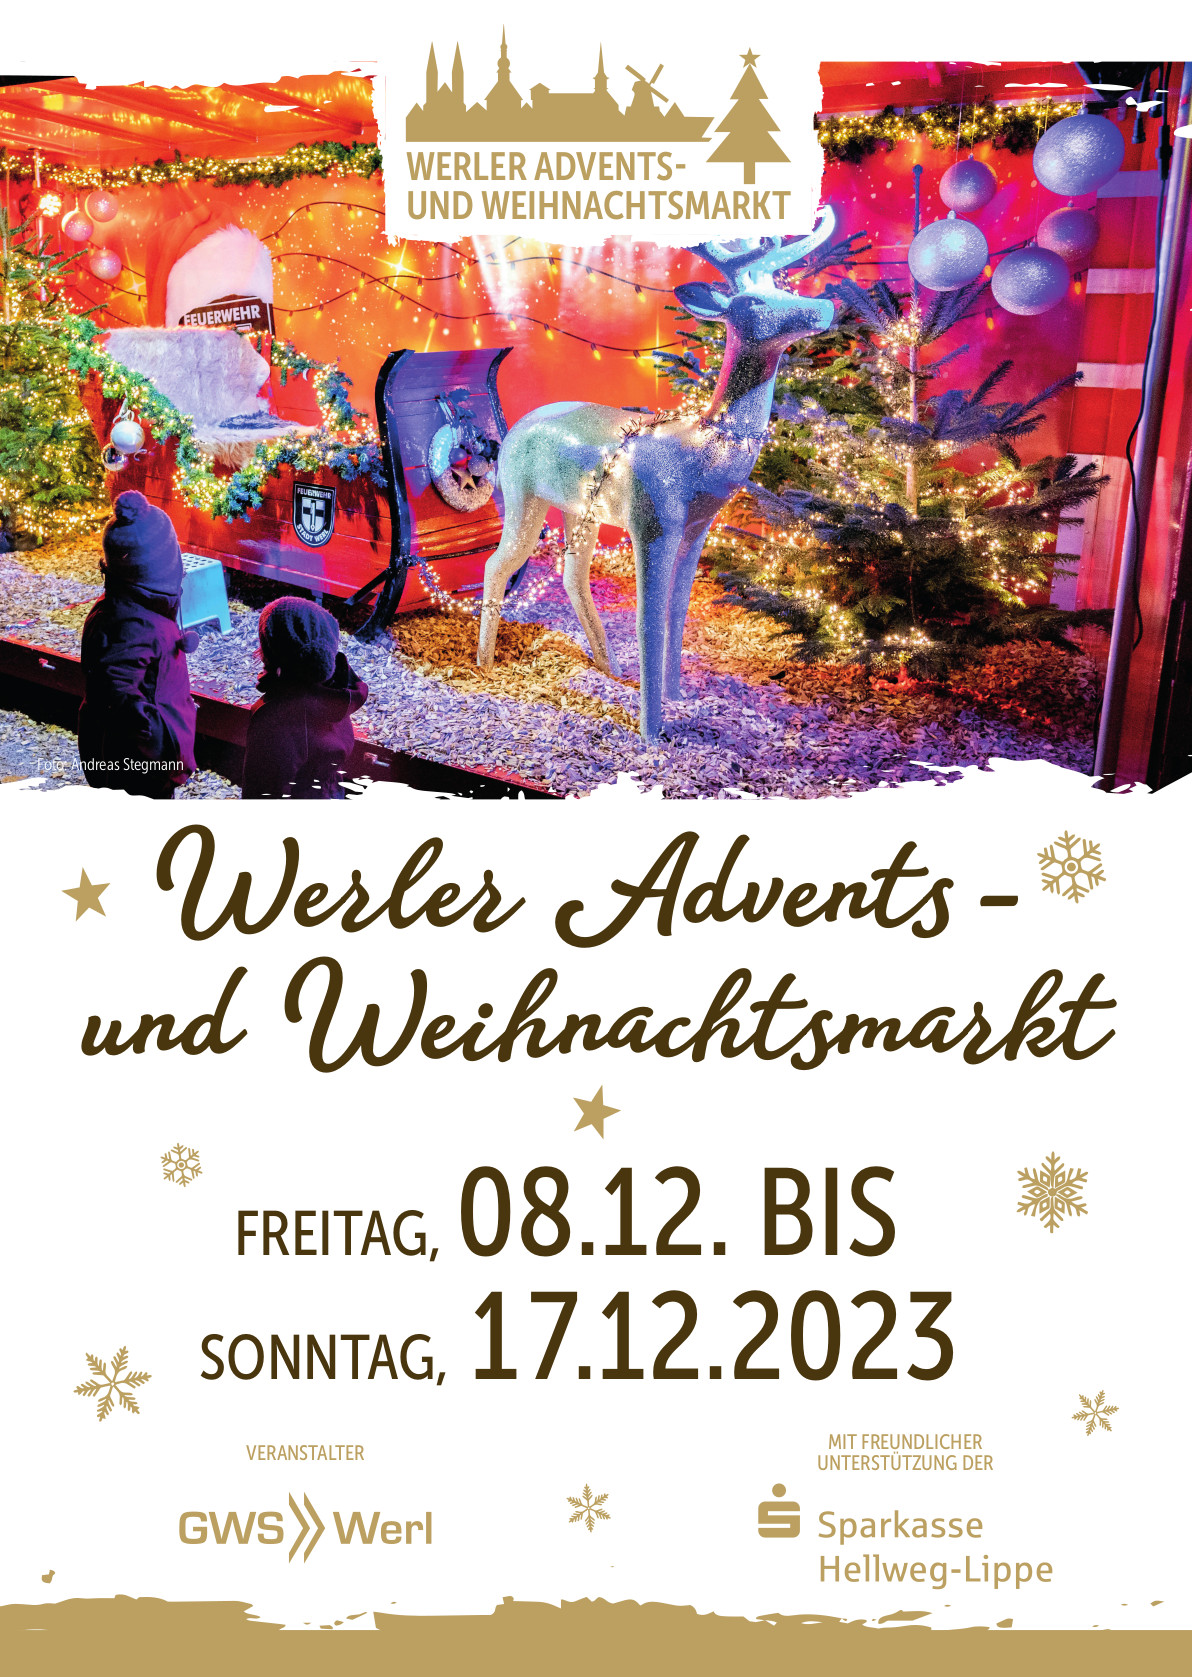 Plakat für den Werler Advents- und Weihnachtsmarkt 2023, der vom 8.12. bis 17.12.2023 auf dem Werler Marktplatz stattfindet.